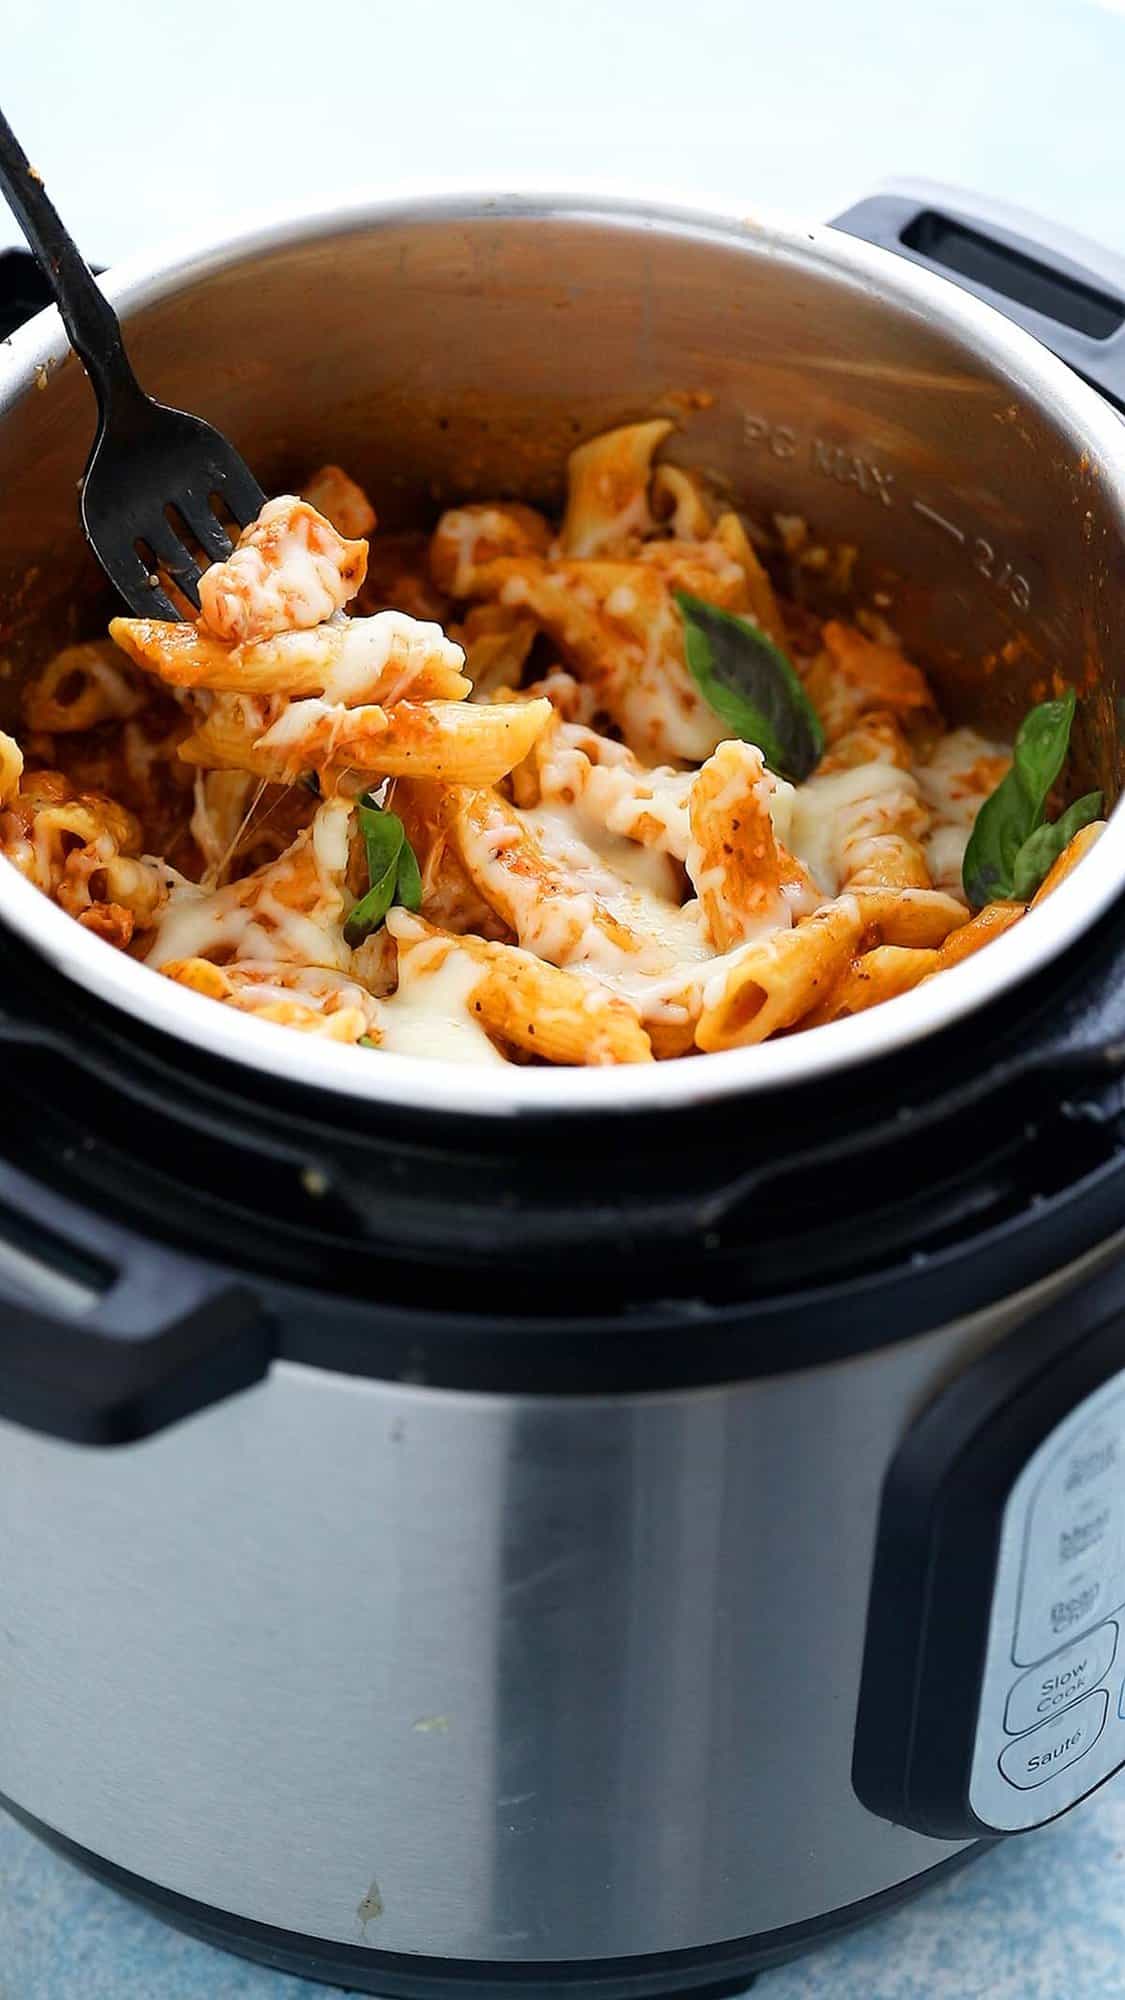 https://www.kitchenathoskins.com/wp-content/uploads/2018/03/instant-pot-chicken-pasta-20.jpg